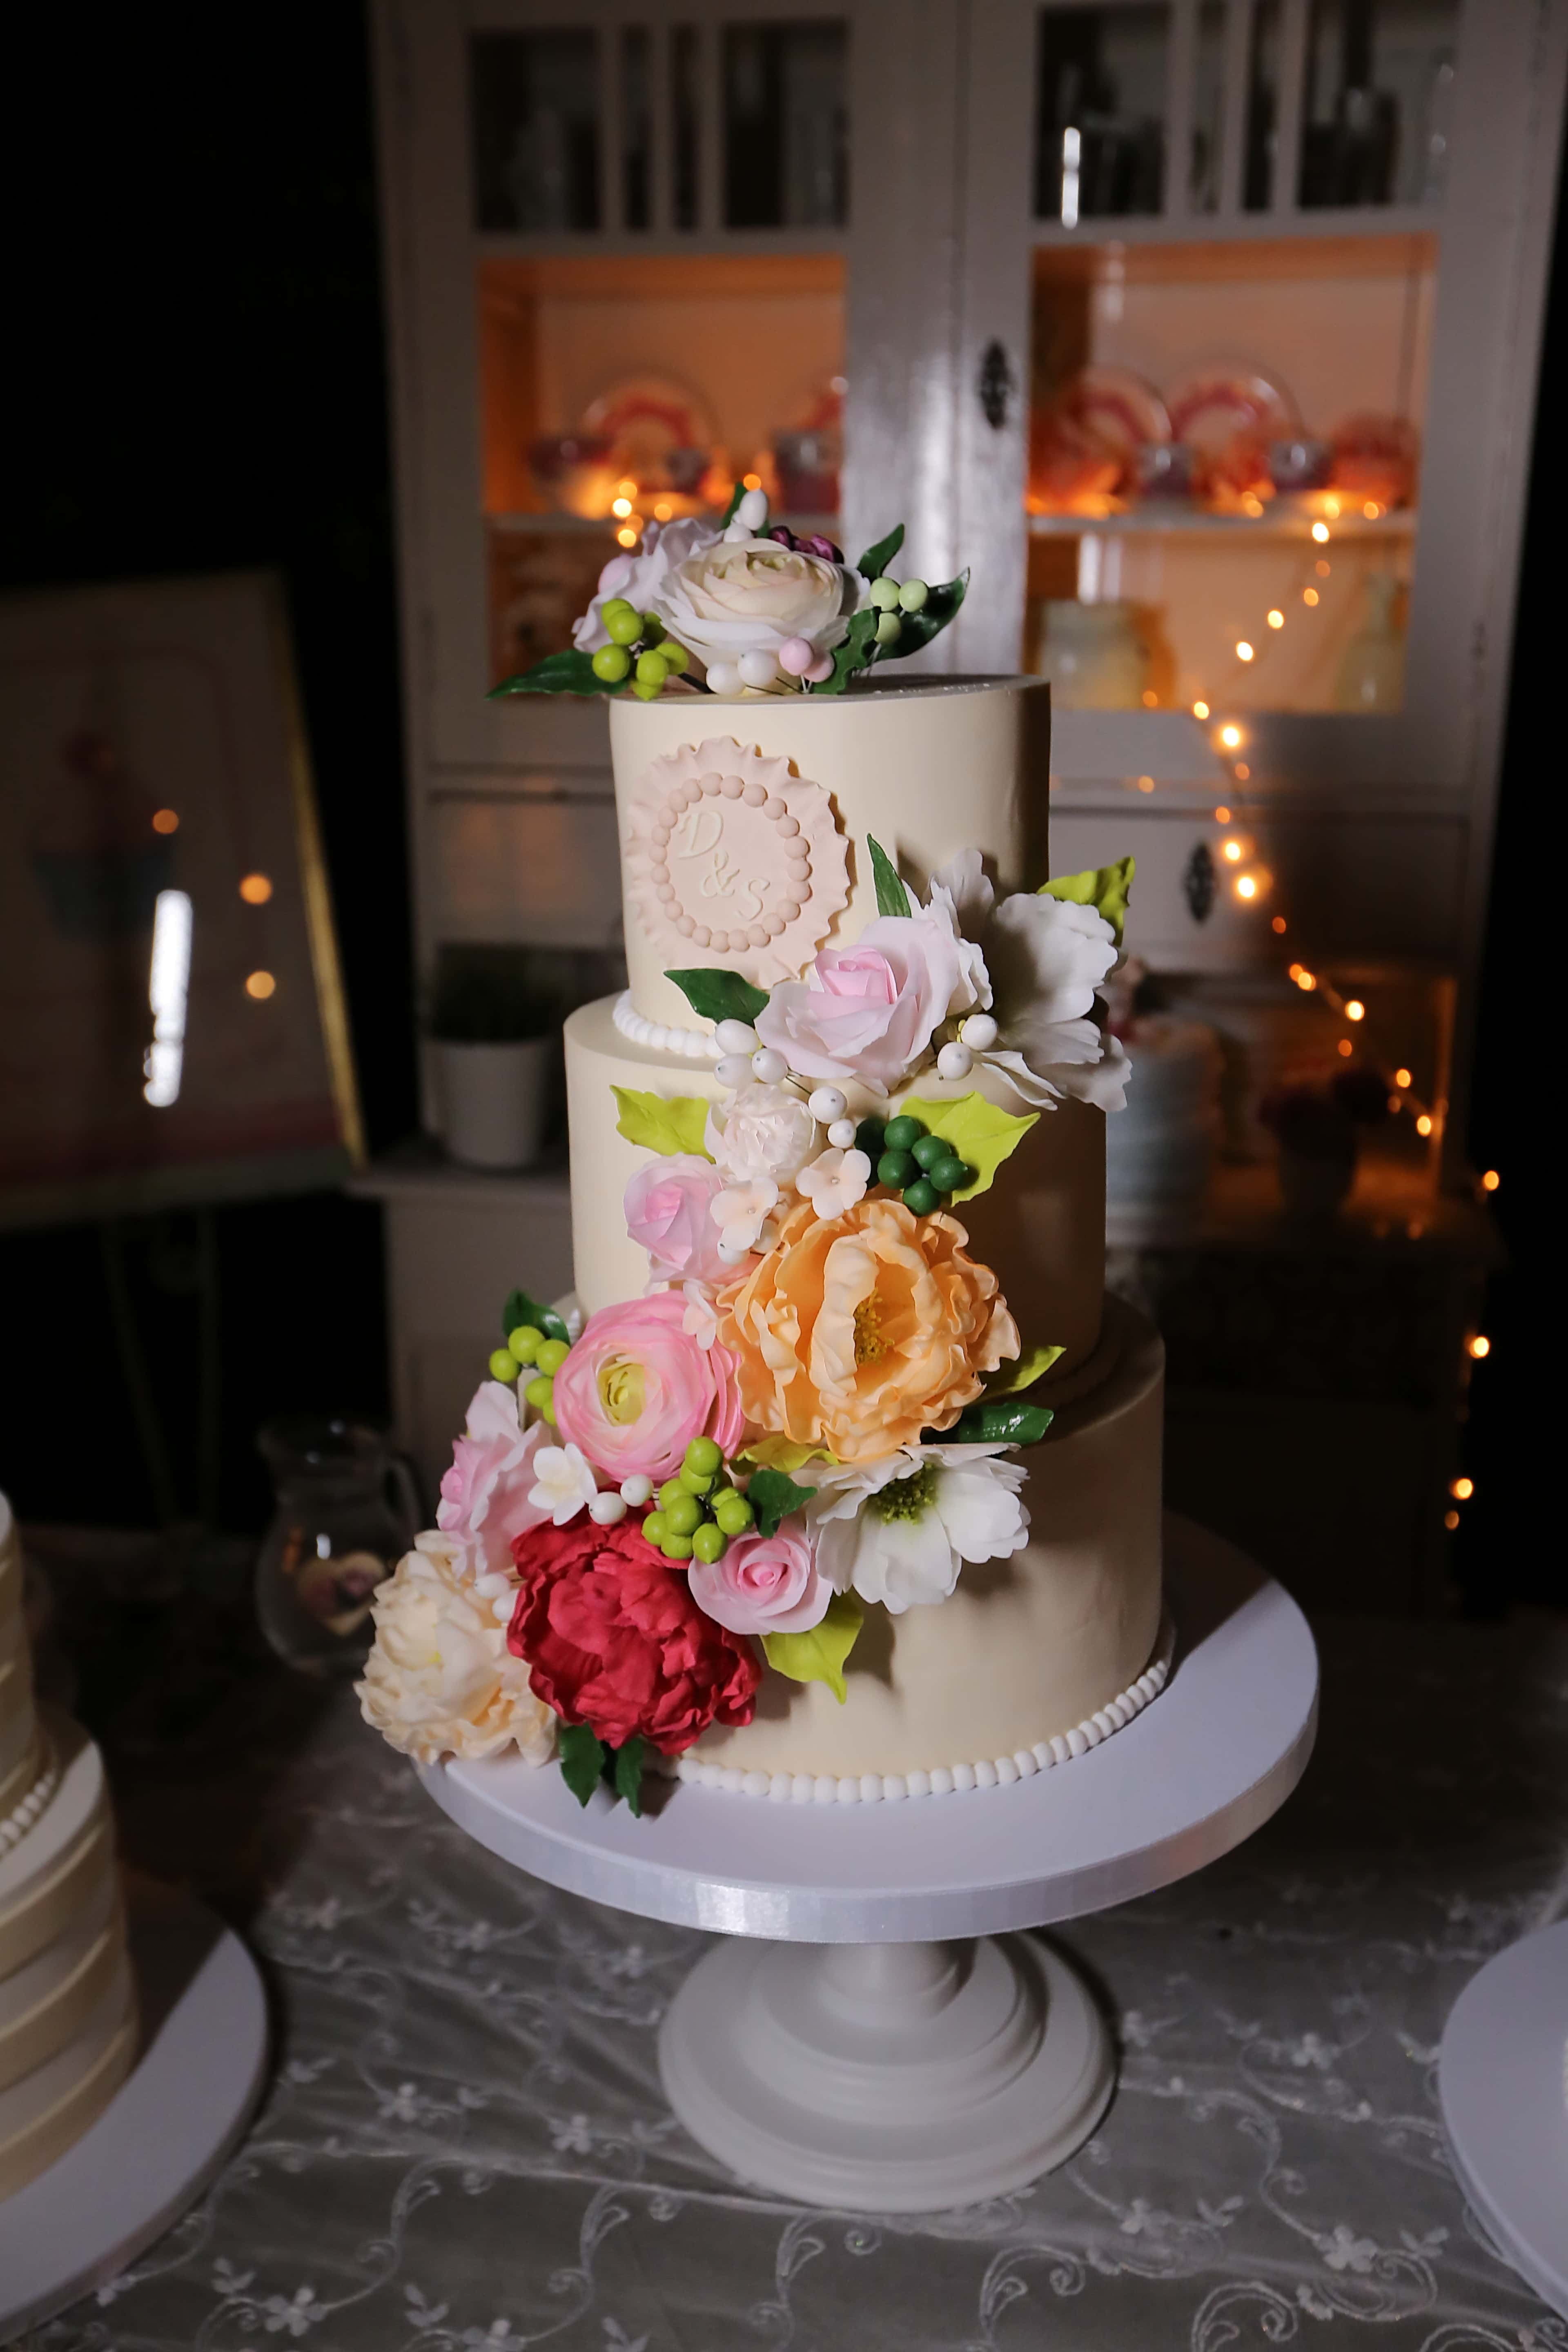 フリー写真画像 ウエディング ケーキ キッチン ロマンチックです 室内装飾 インテリア デザイン 結婚式 テーブル キャンドル 花婿 花